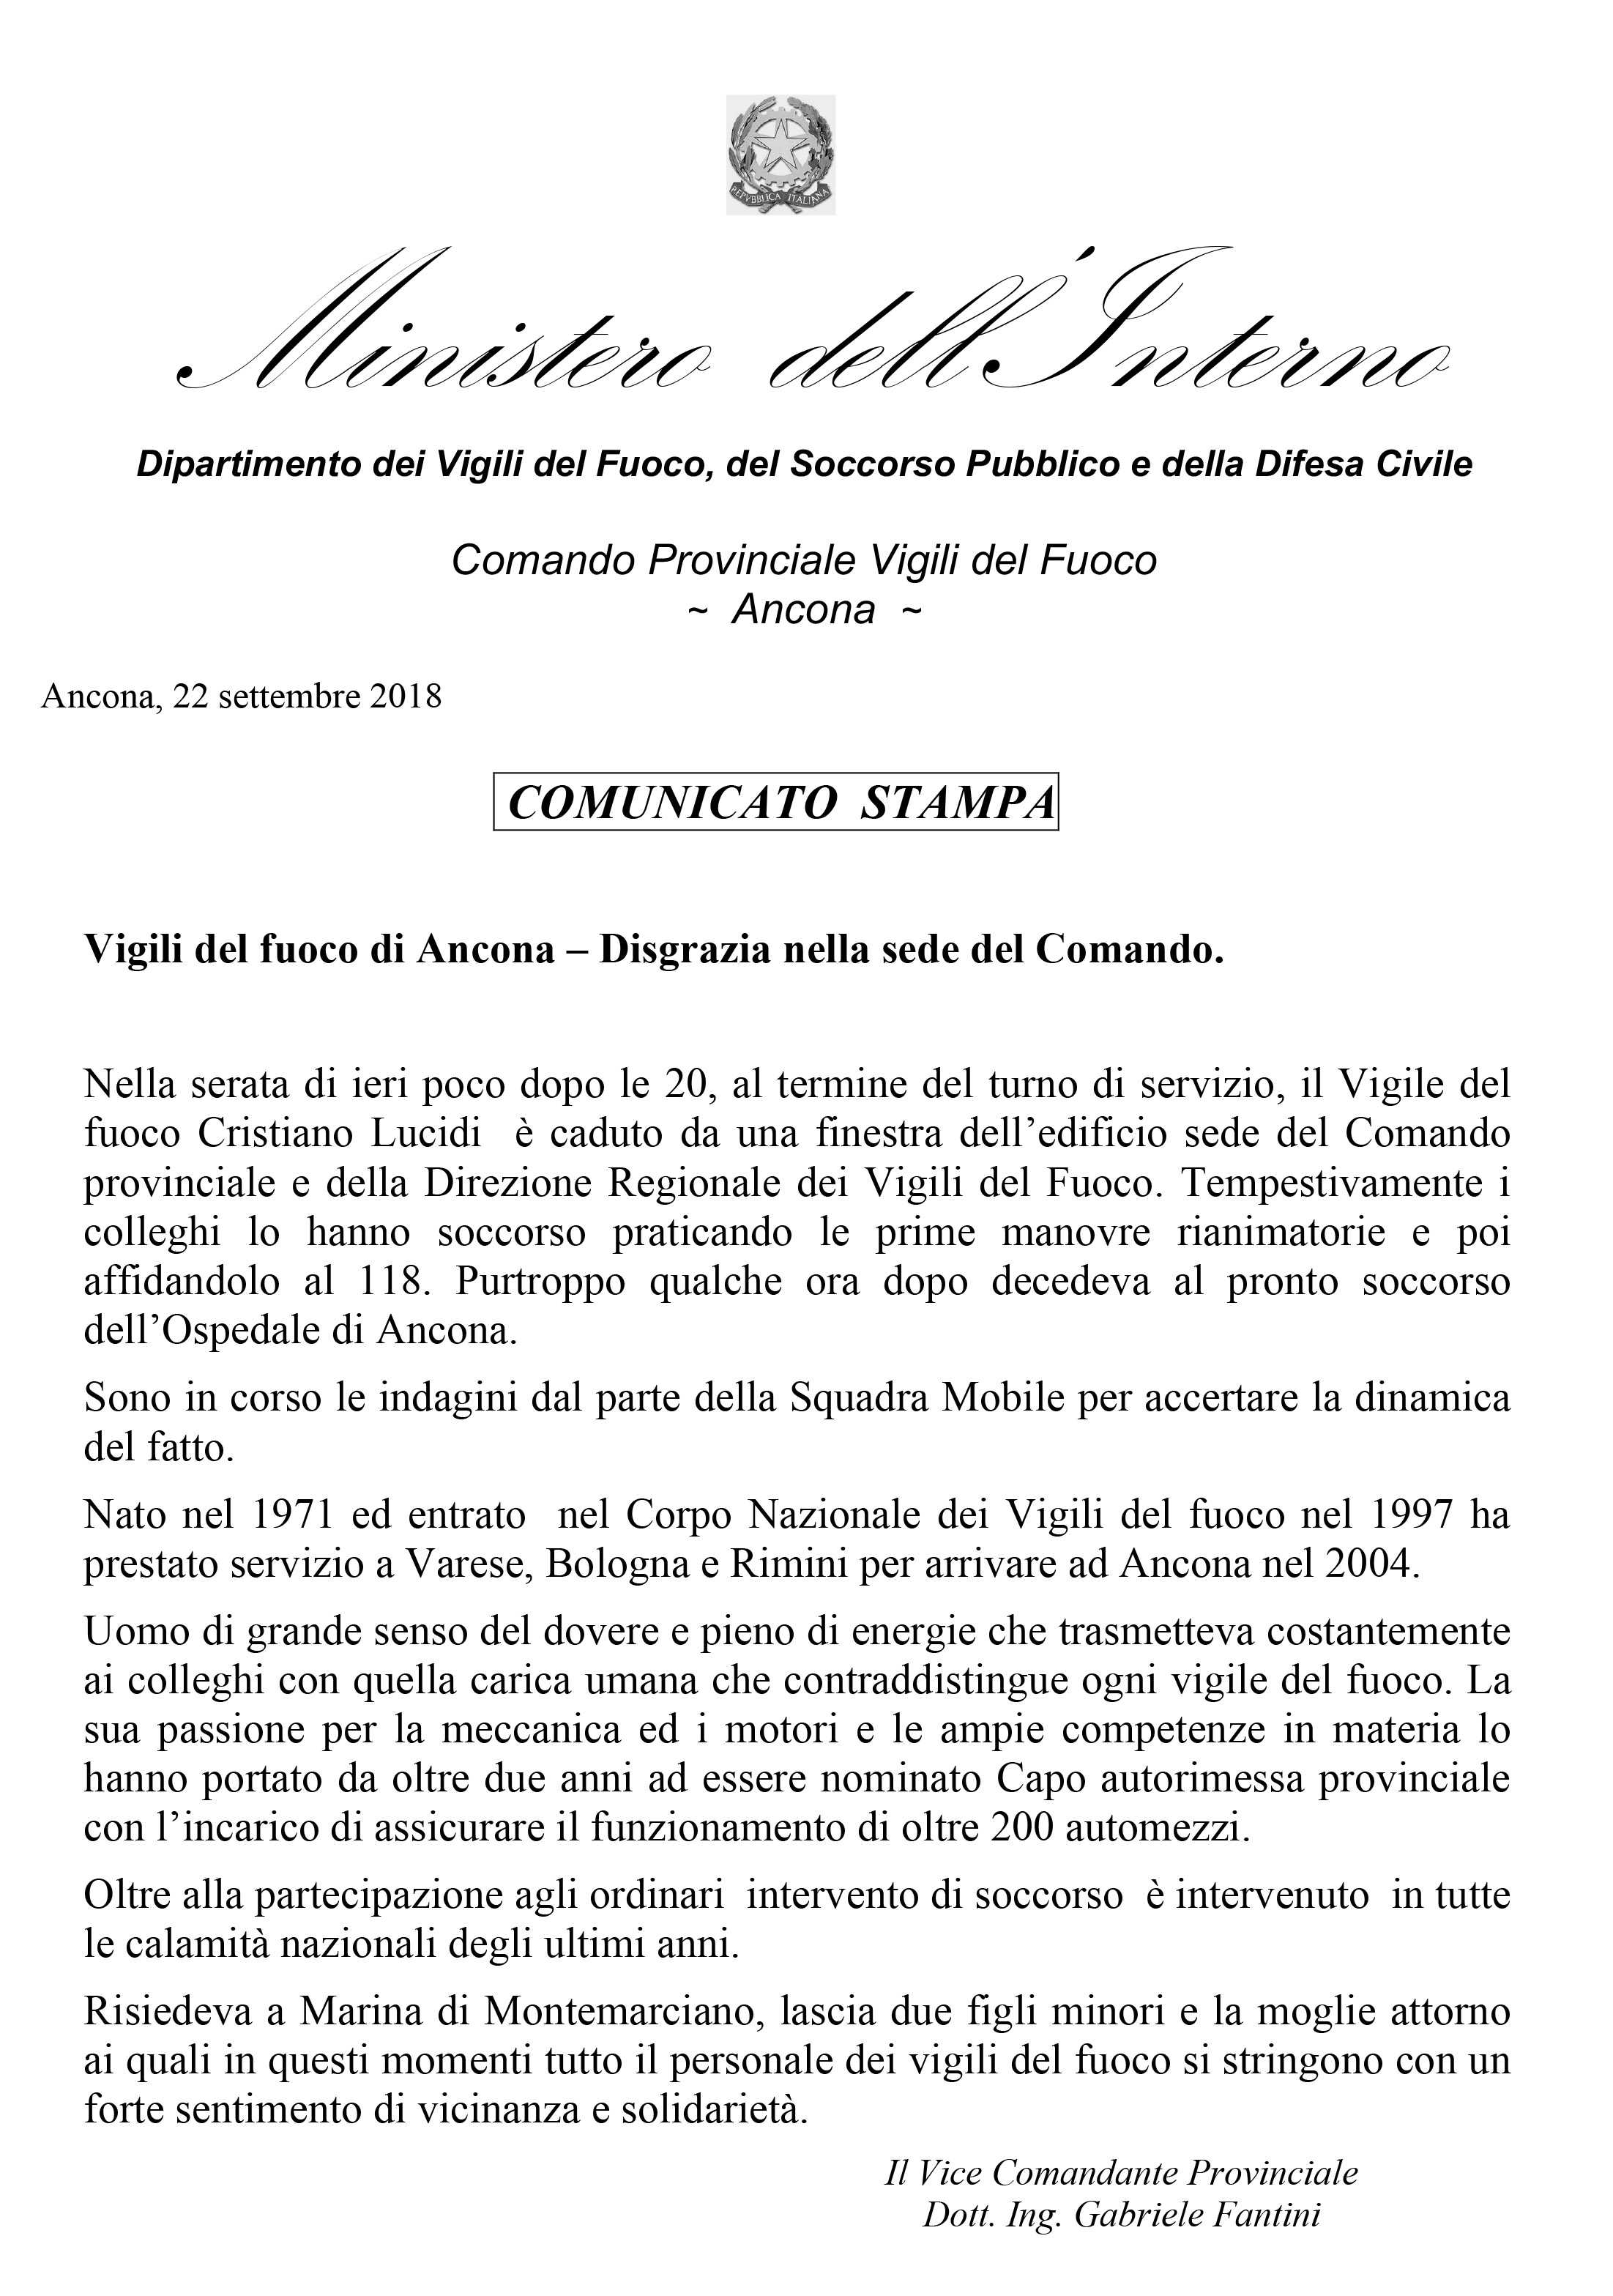 Vigili del fuoco di Ancona: Disgrazia nella sede del Comando